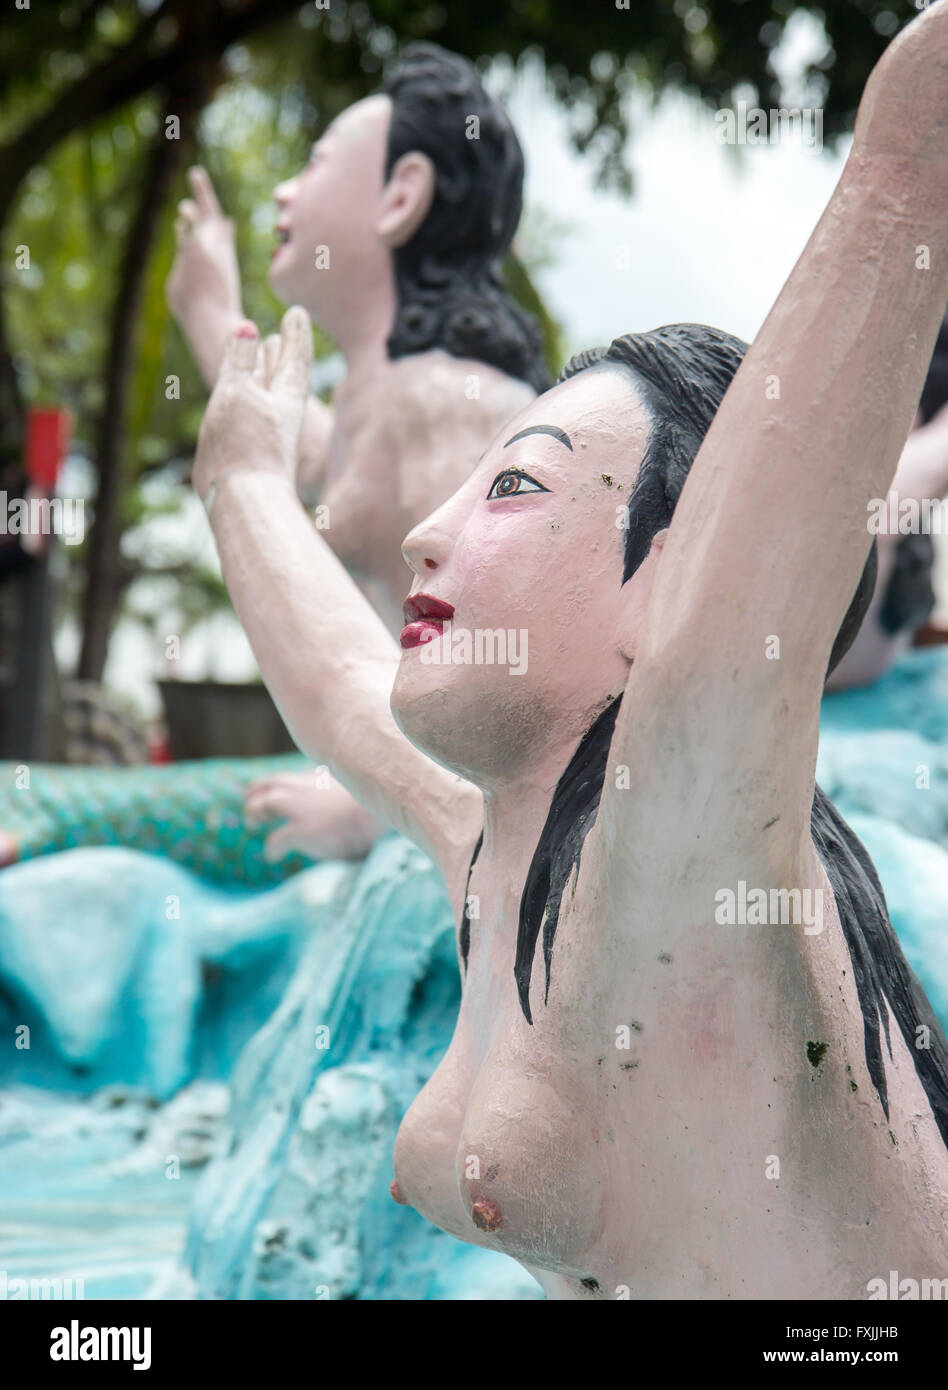 Des statues de mermaid (sirène) Banque D'Images